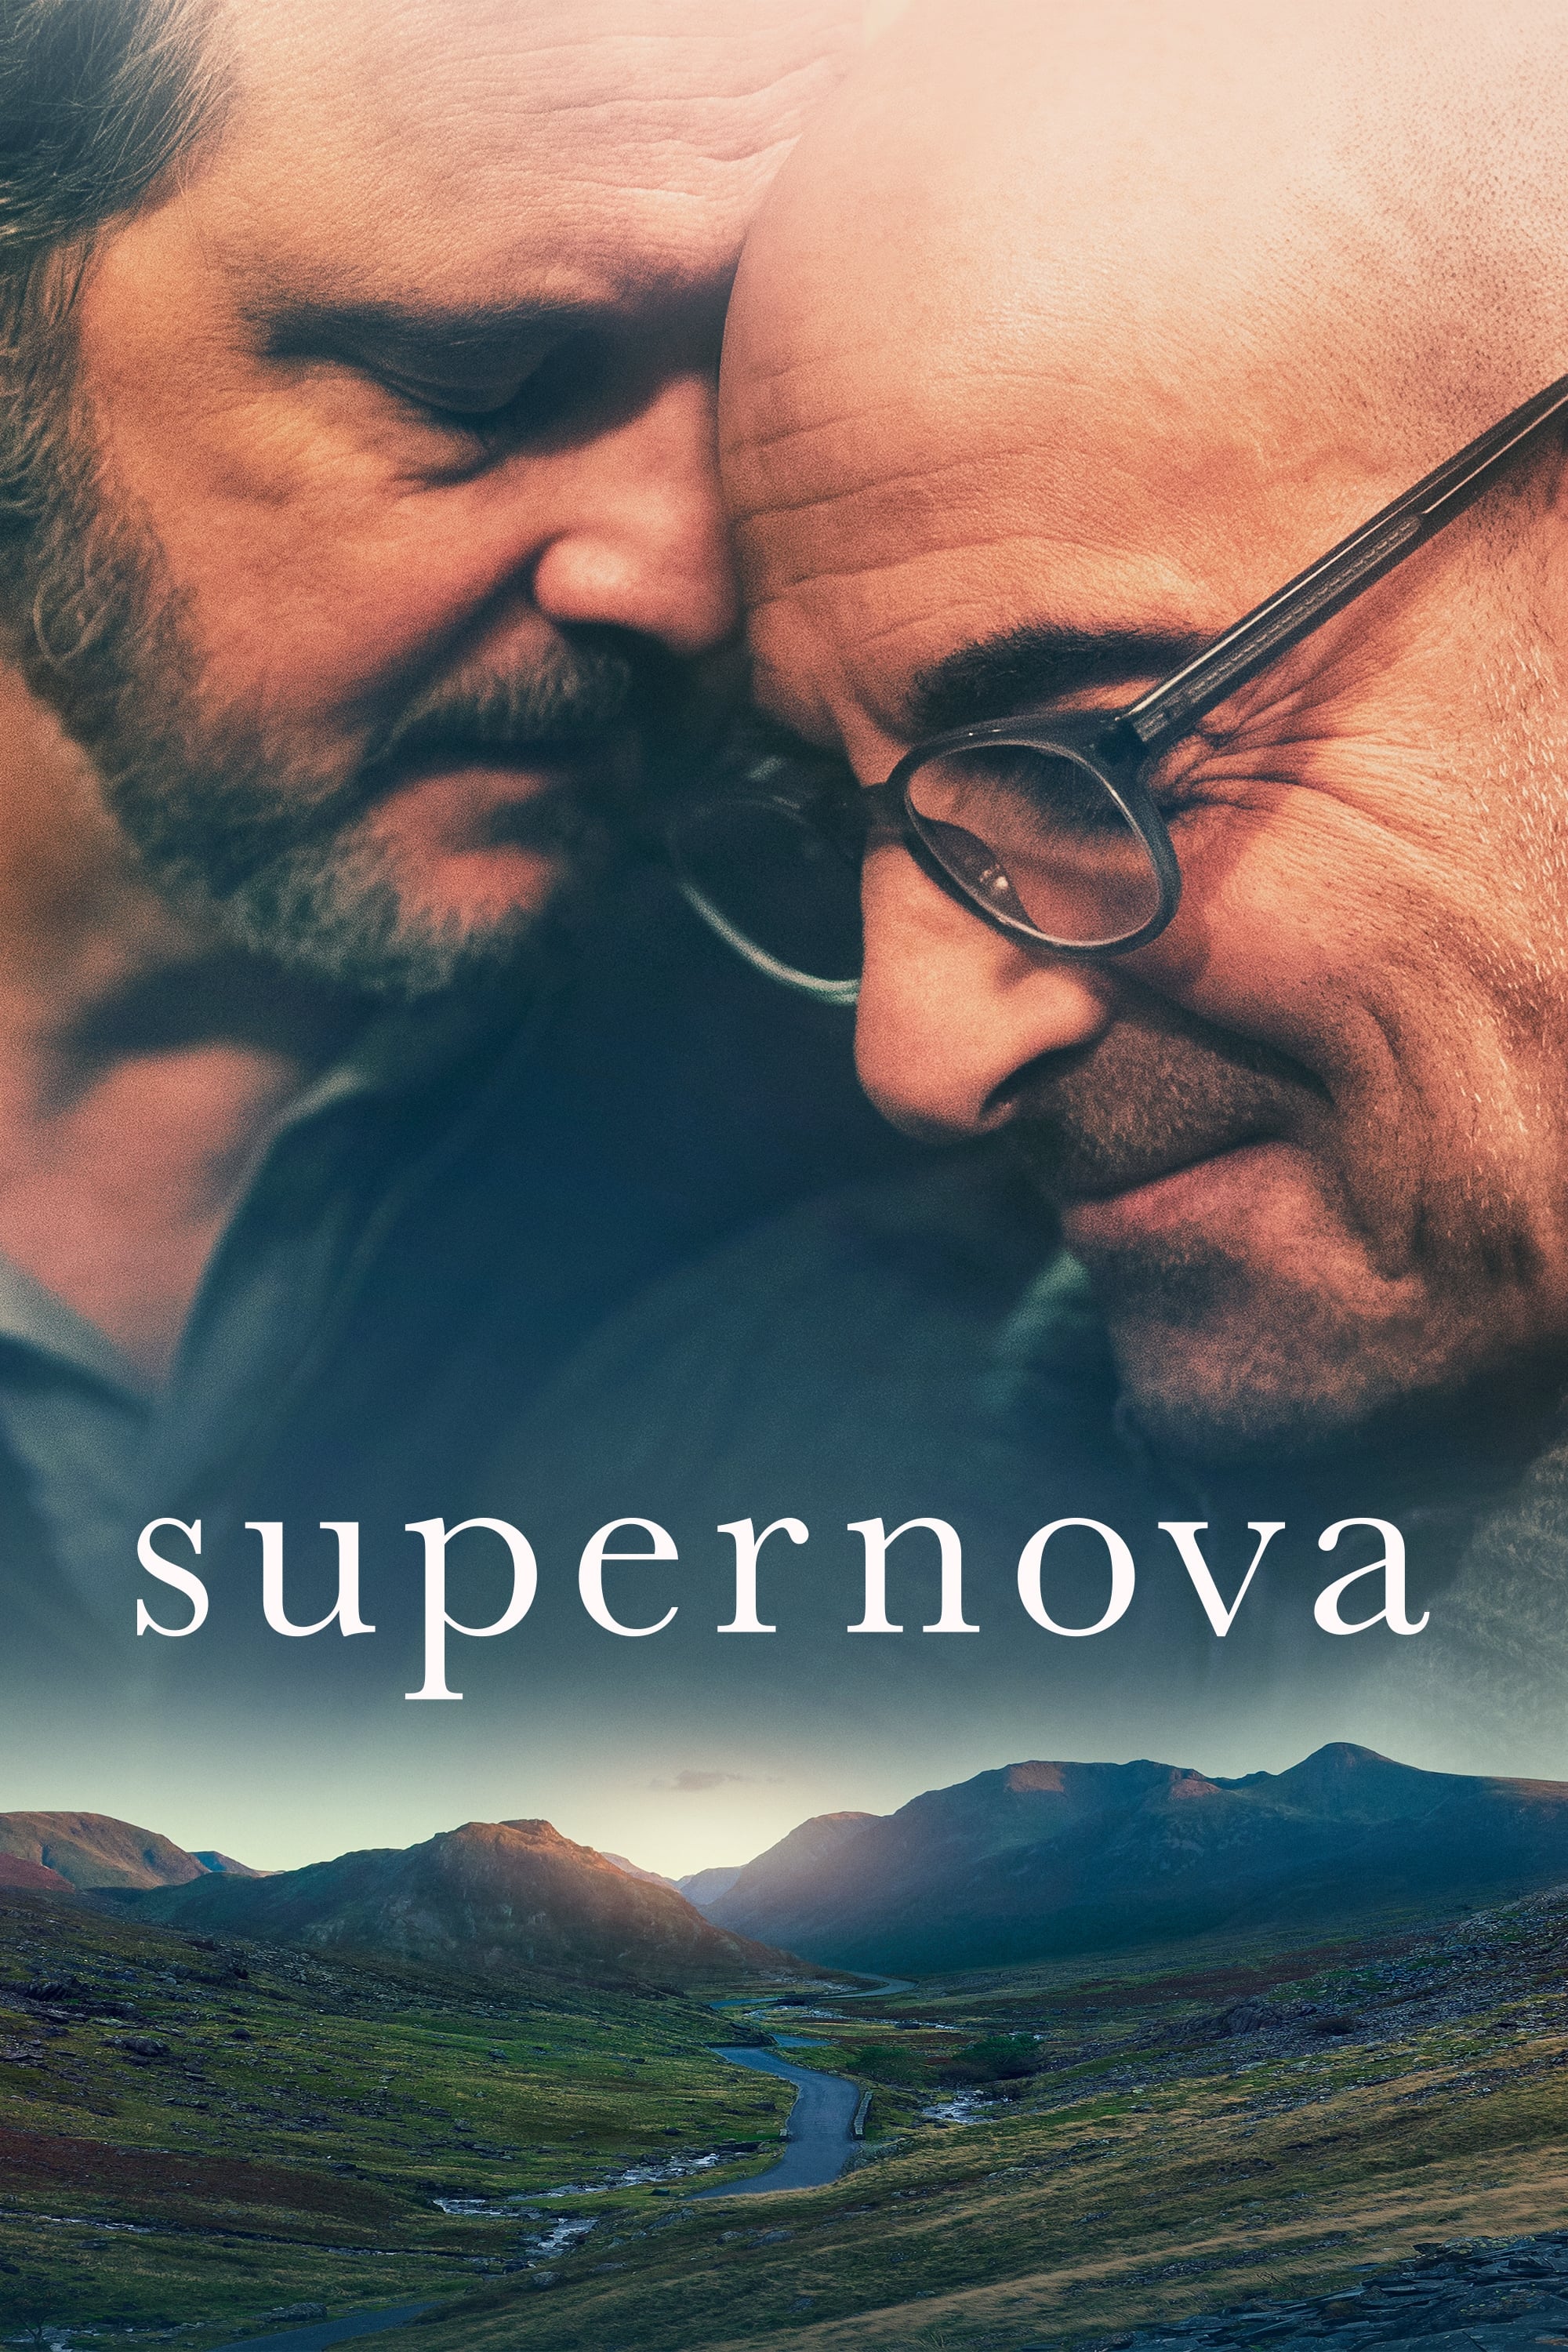 Supernova (Supernova) [2020]